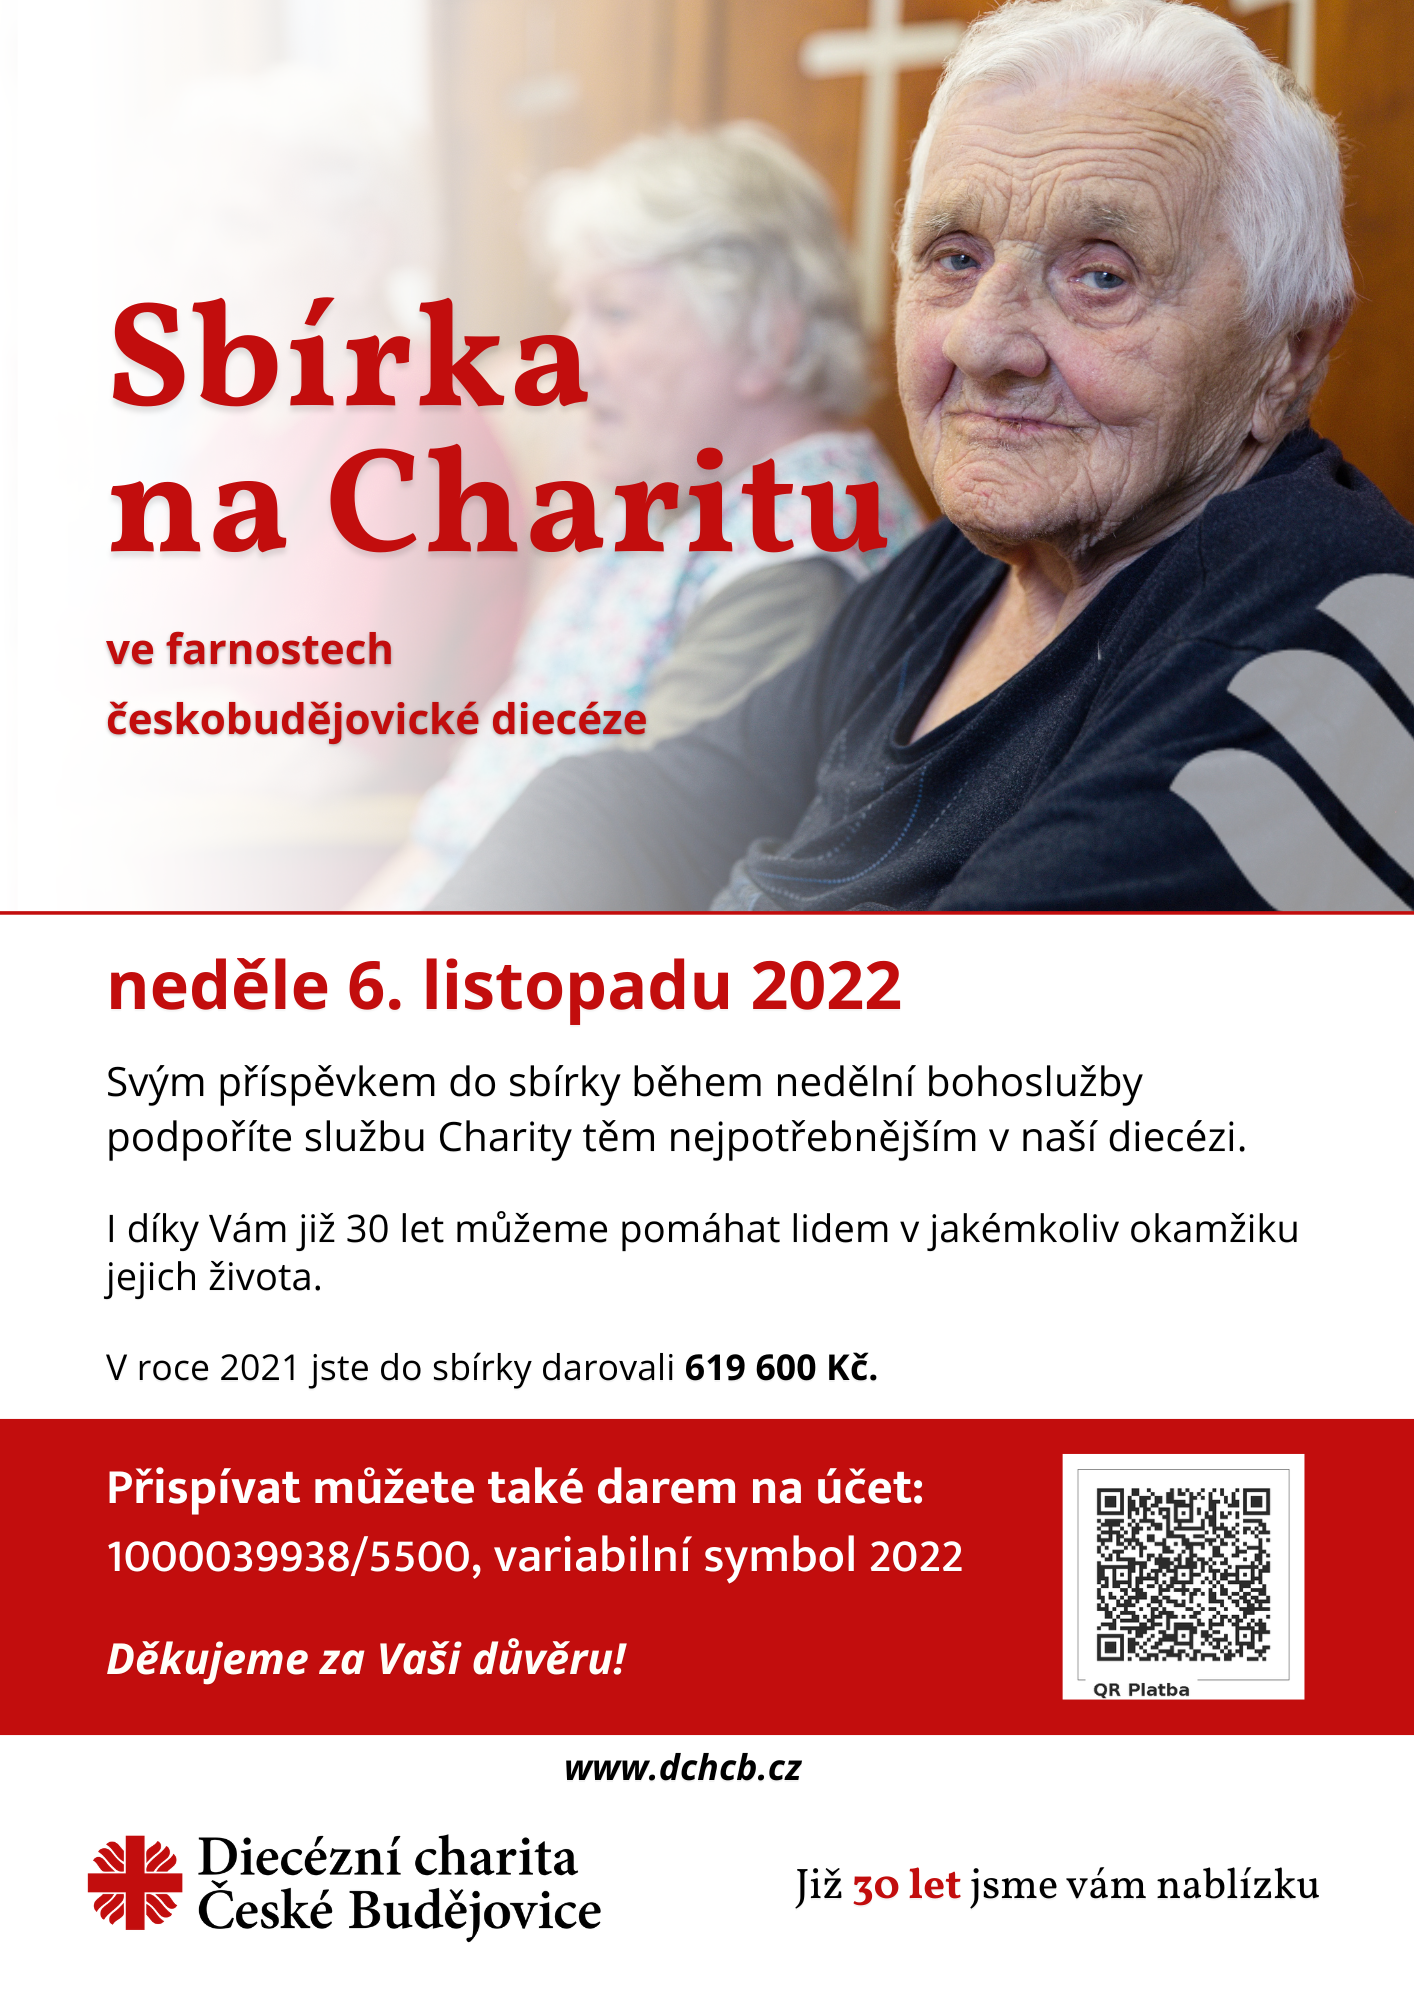 sbirka_na_charitu_2022.png